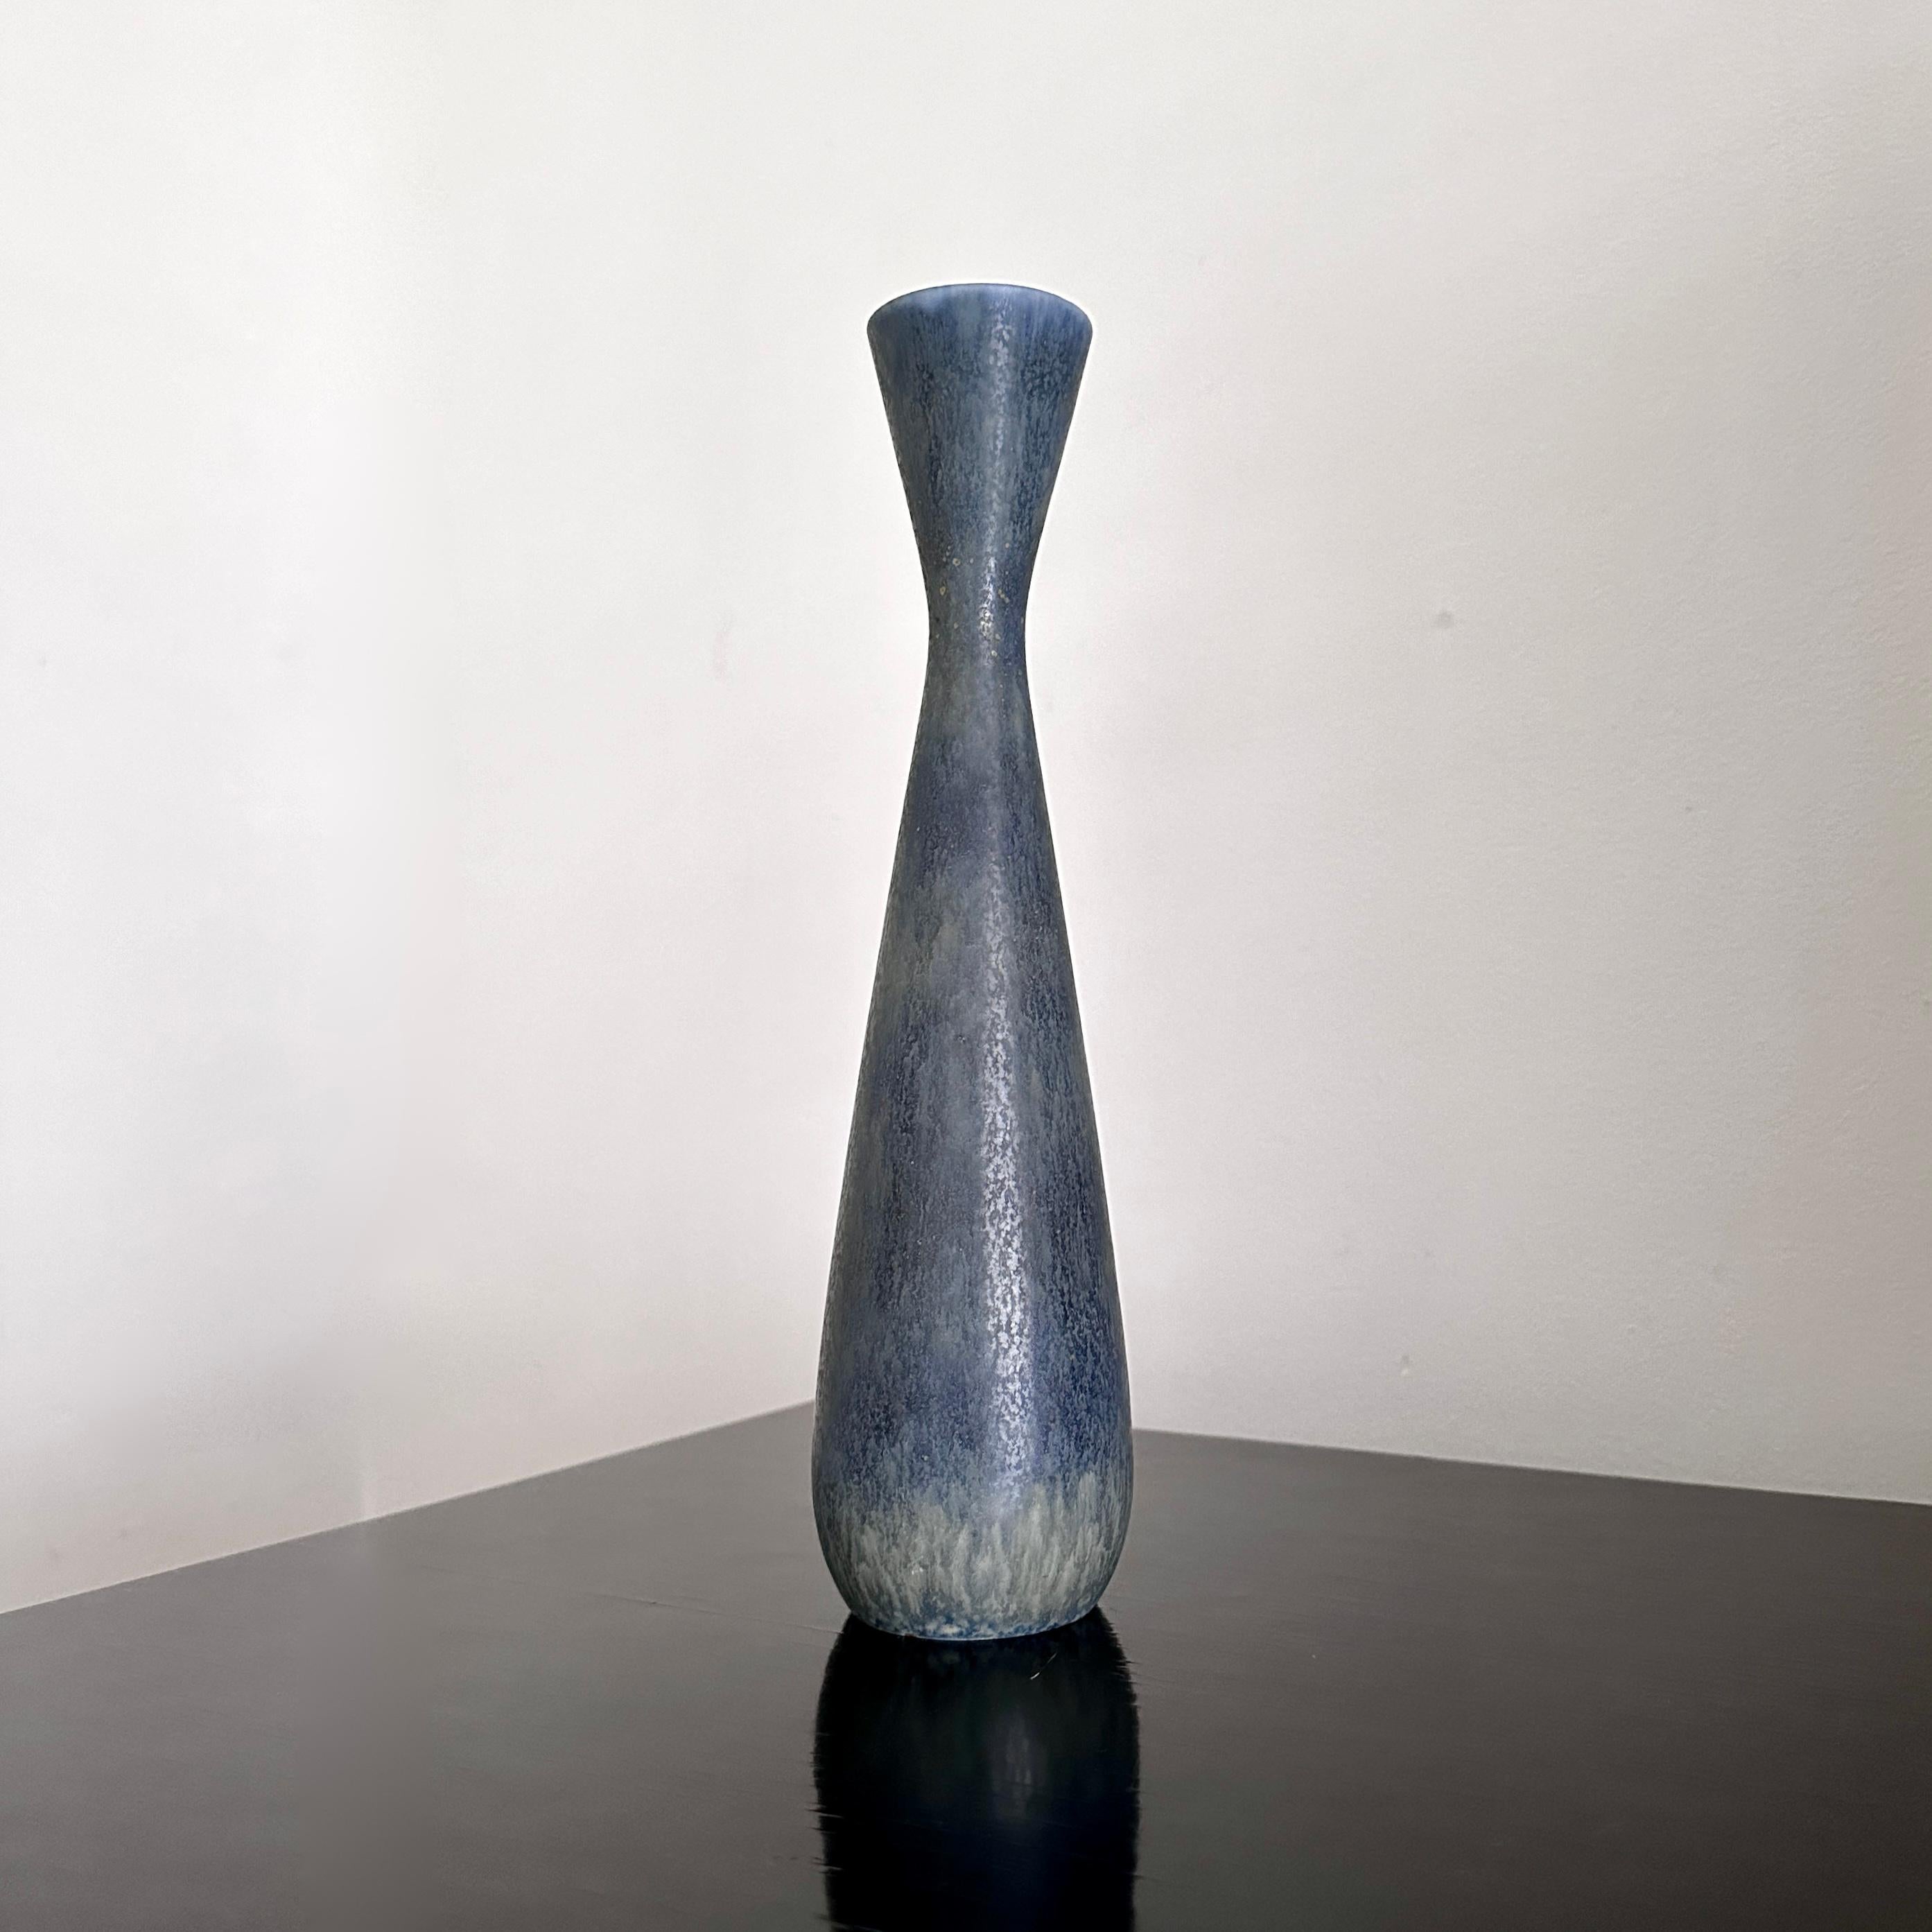 Magnifique vase bleu/vert conçu par Carl-Harry Stålhane (1920-1990) pour Röstrand Procelain Works.

Stålhand a commencé à travailler pour Rorstrand à l'âge de 18 ans. Dans un premier temps, il a décoré des objets en céramique en tant qu'assistant de